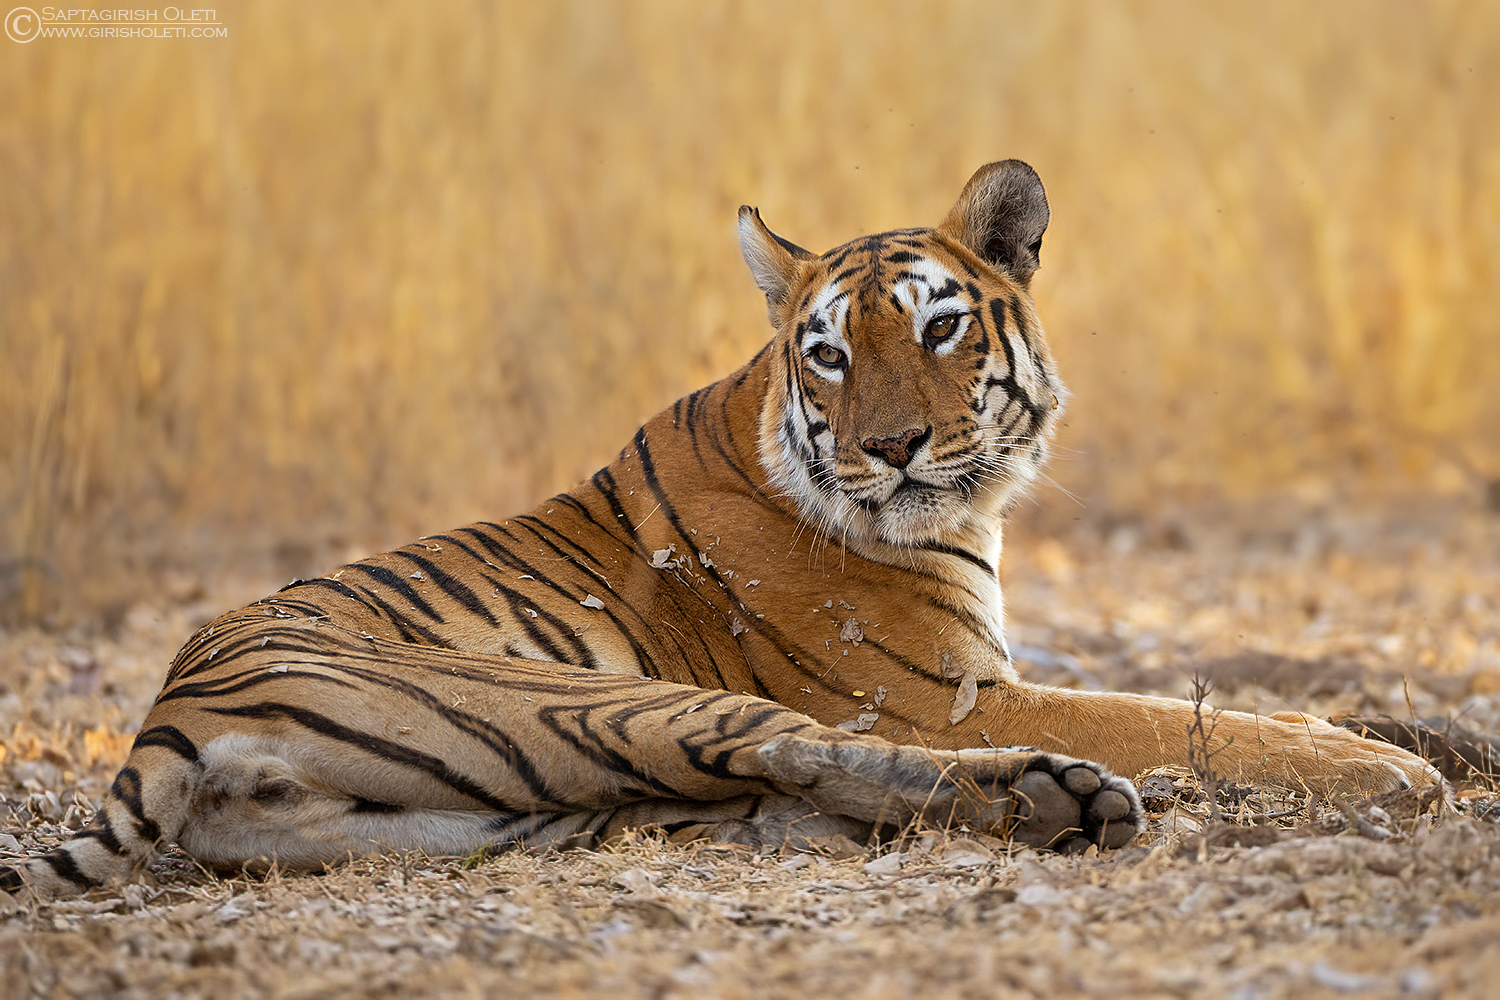 Tiger photographed at Tadoba, India